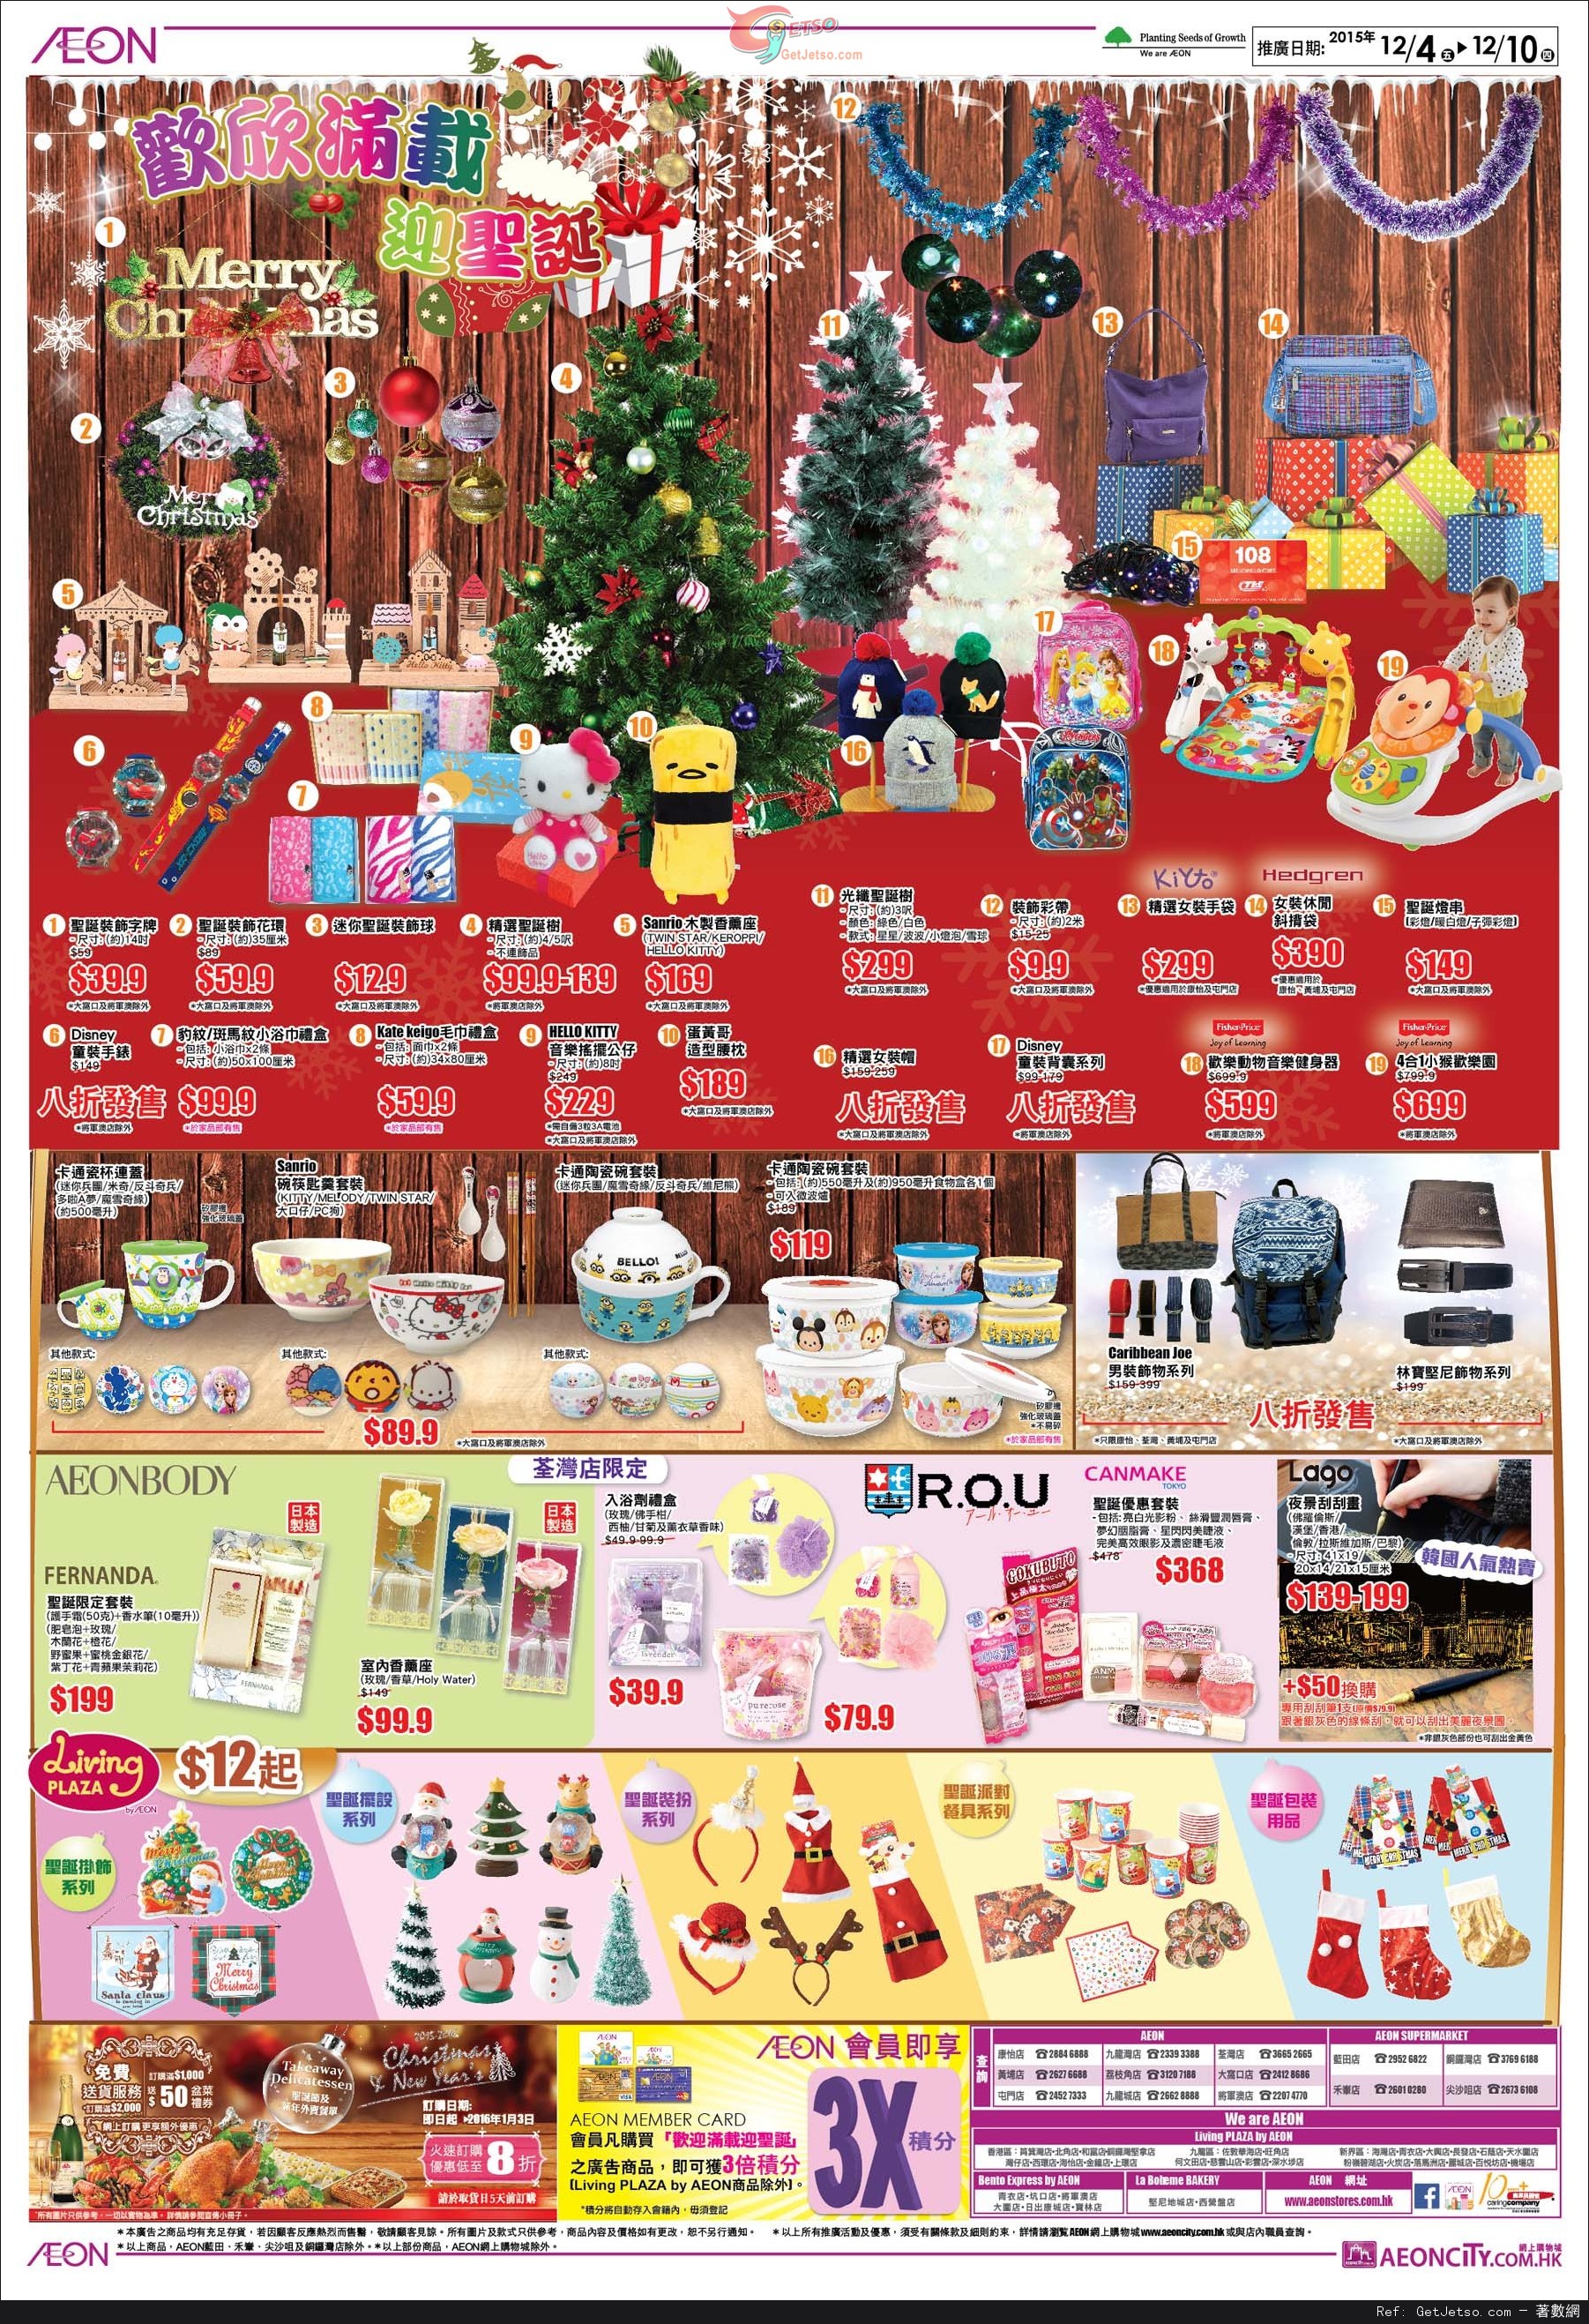 AEON 歡欣滿載迎聖誕/旅行用品特集購物優惠(至15年12月13日)圖片1